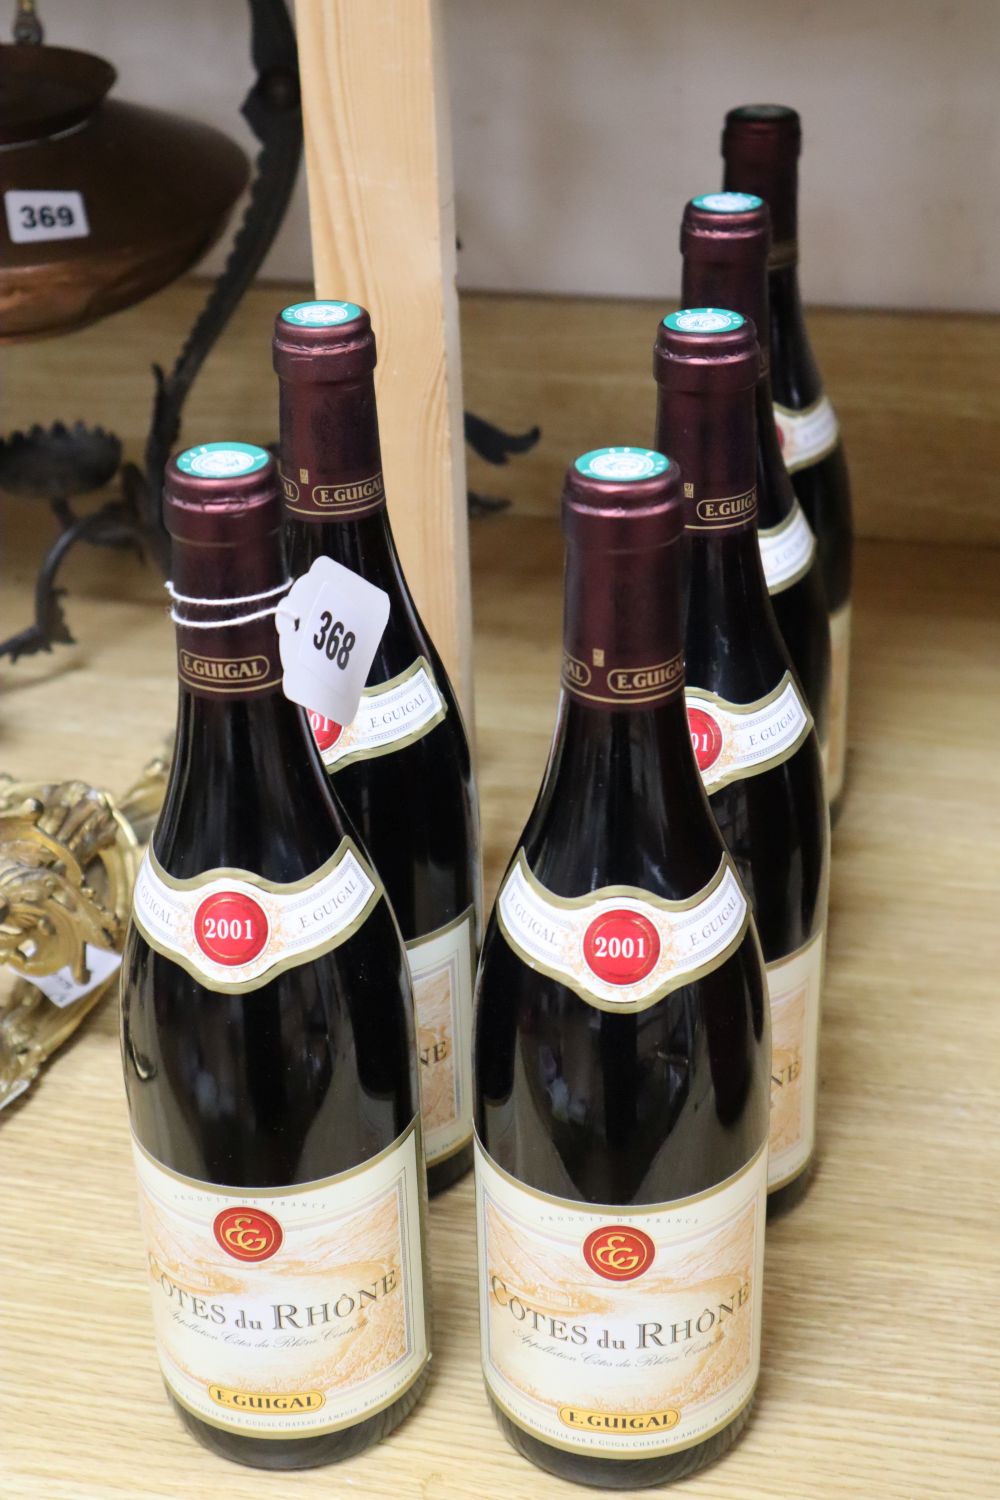 Six bottles of E. Guigal Cotes du Rhone, 75cl, 2001